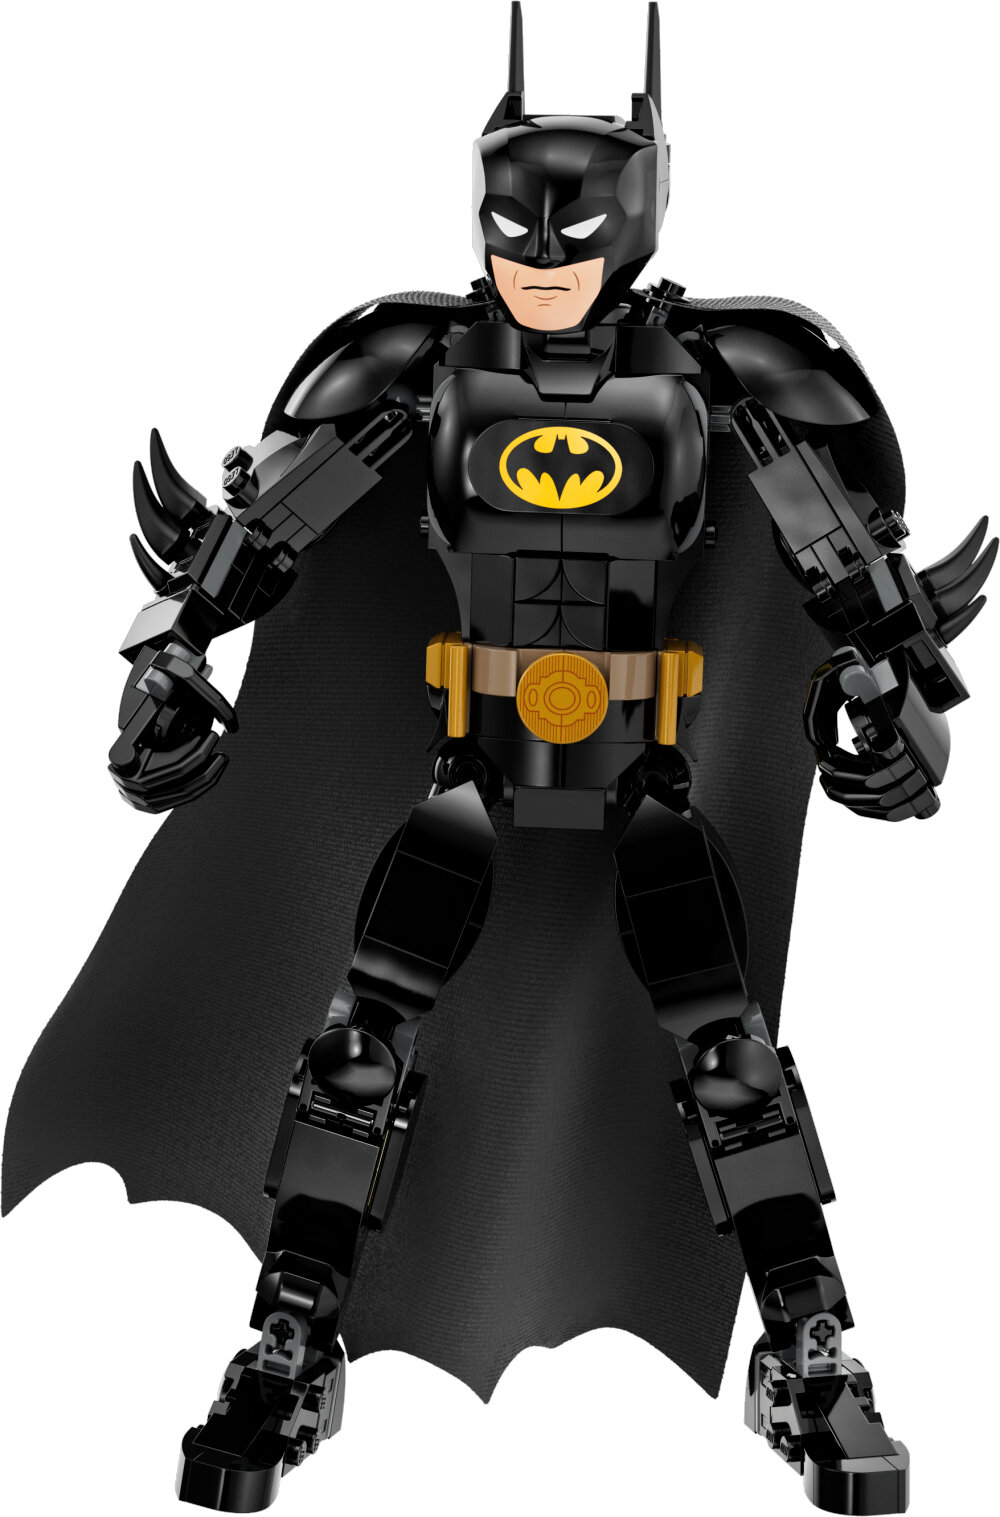 LEGO Batman - Byggbar figur av Batman 8+